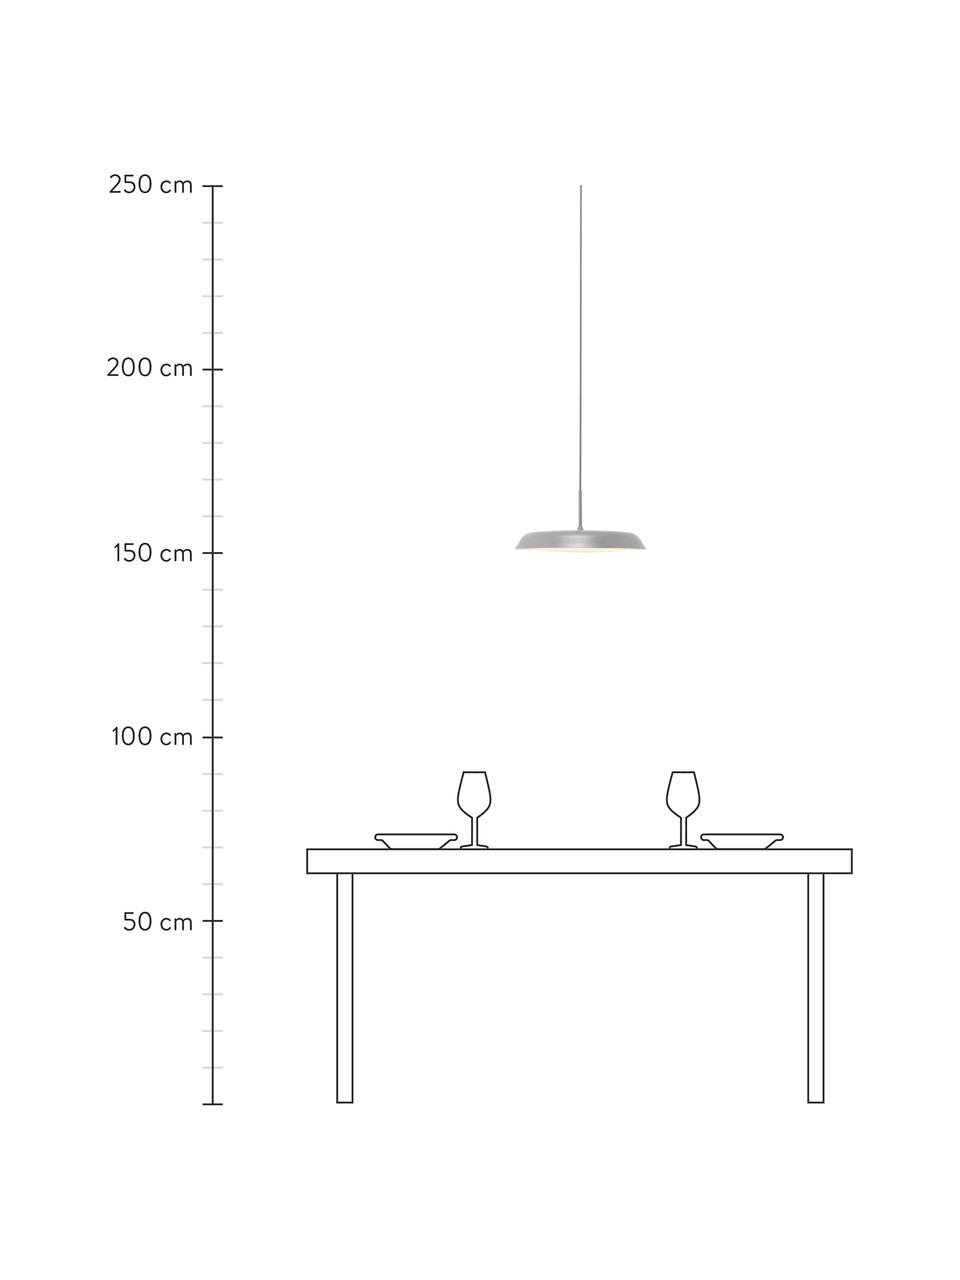 Lámpara de techo LED Piso, Pantalla: metal recubierto, Cable: cubierto en tela, Gris, Ø 36 x Al 17 cm